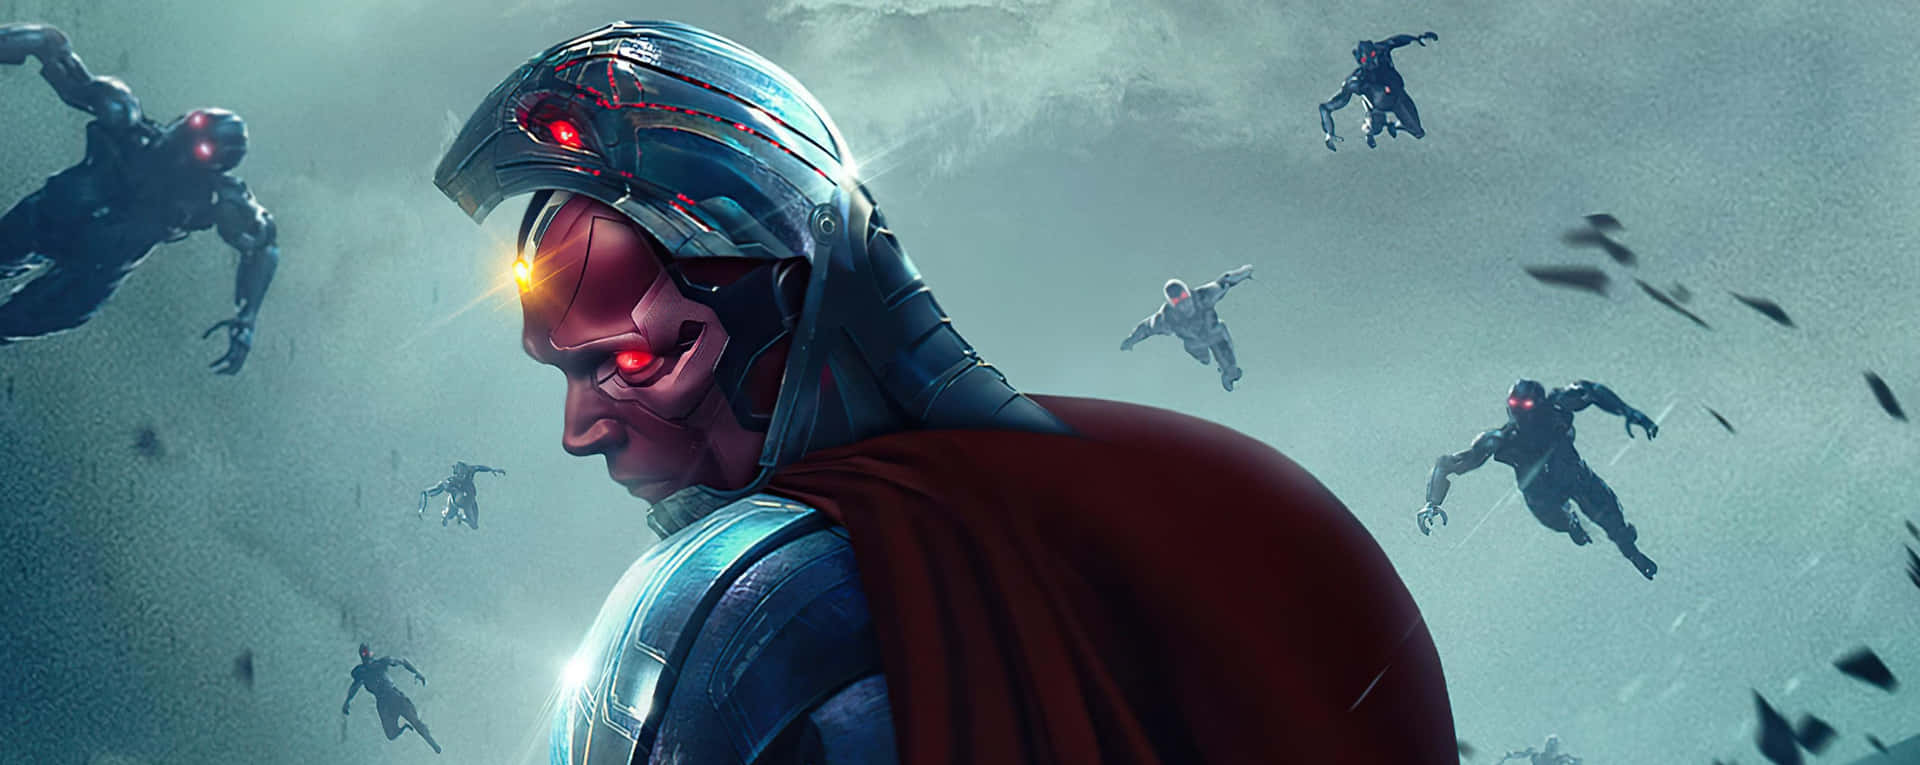 Vision Avengers - Forenet for det større godt Wallpaper